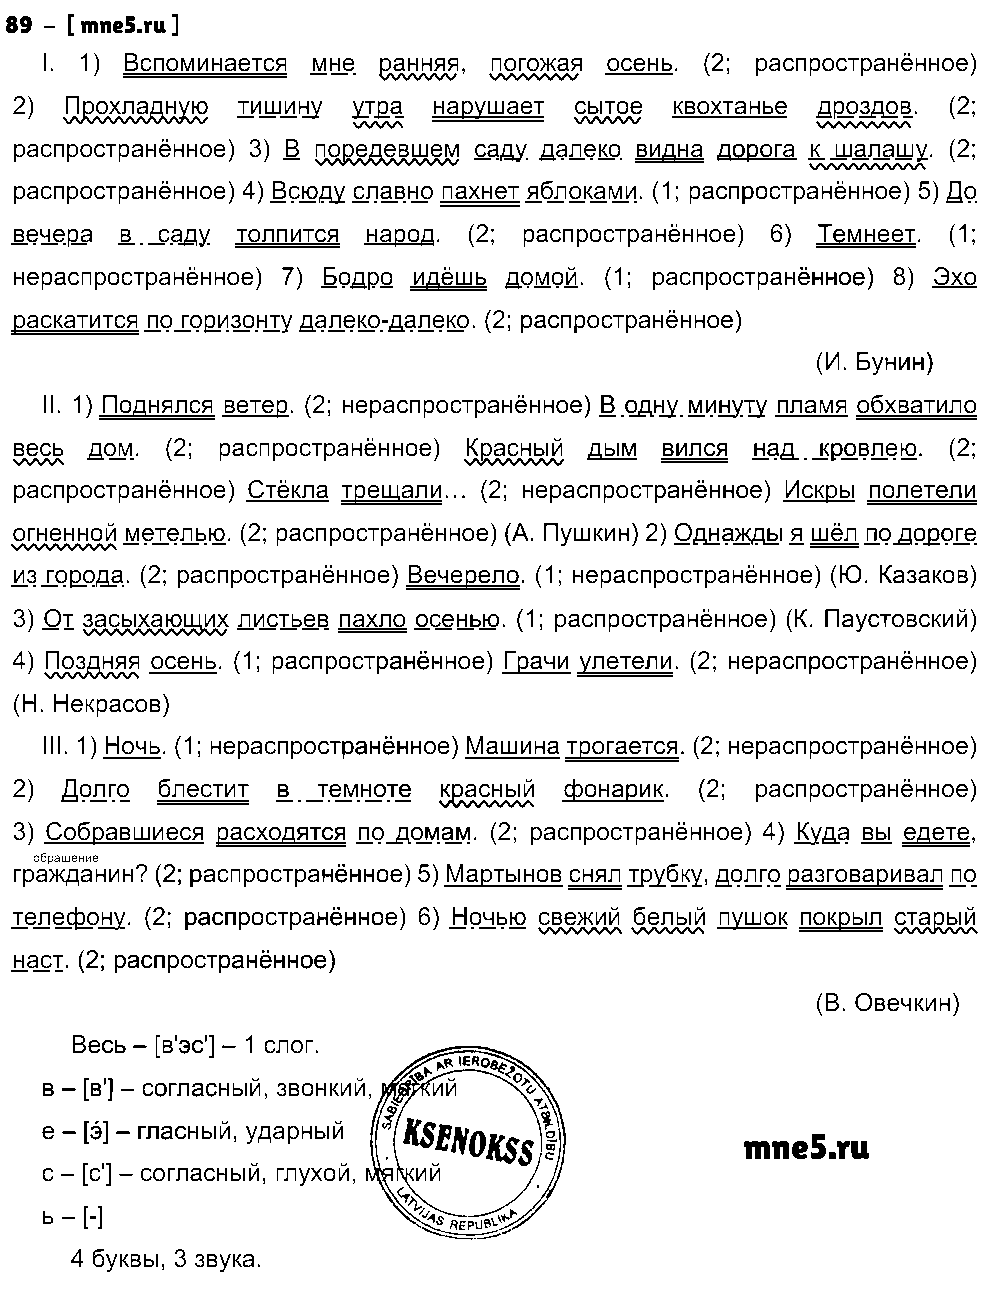 ГДЗ Русский язык 8 класс - 89